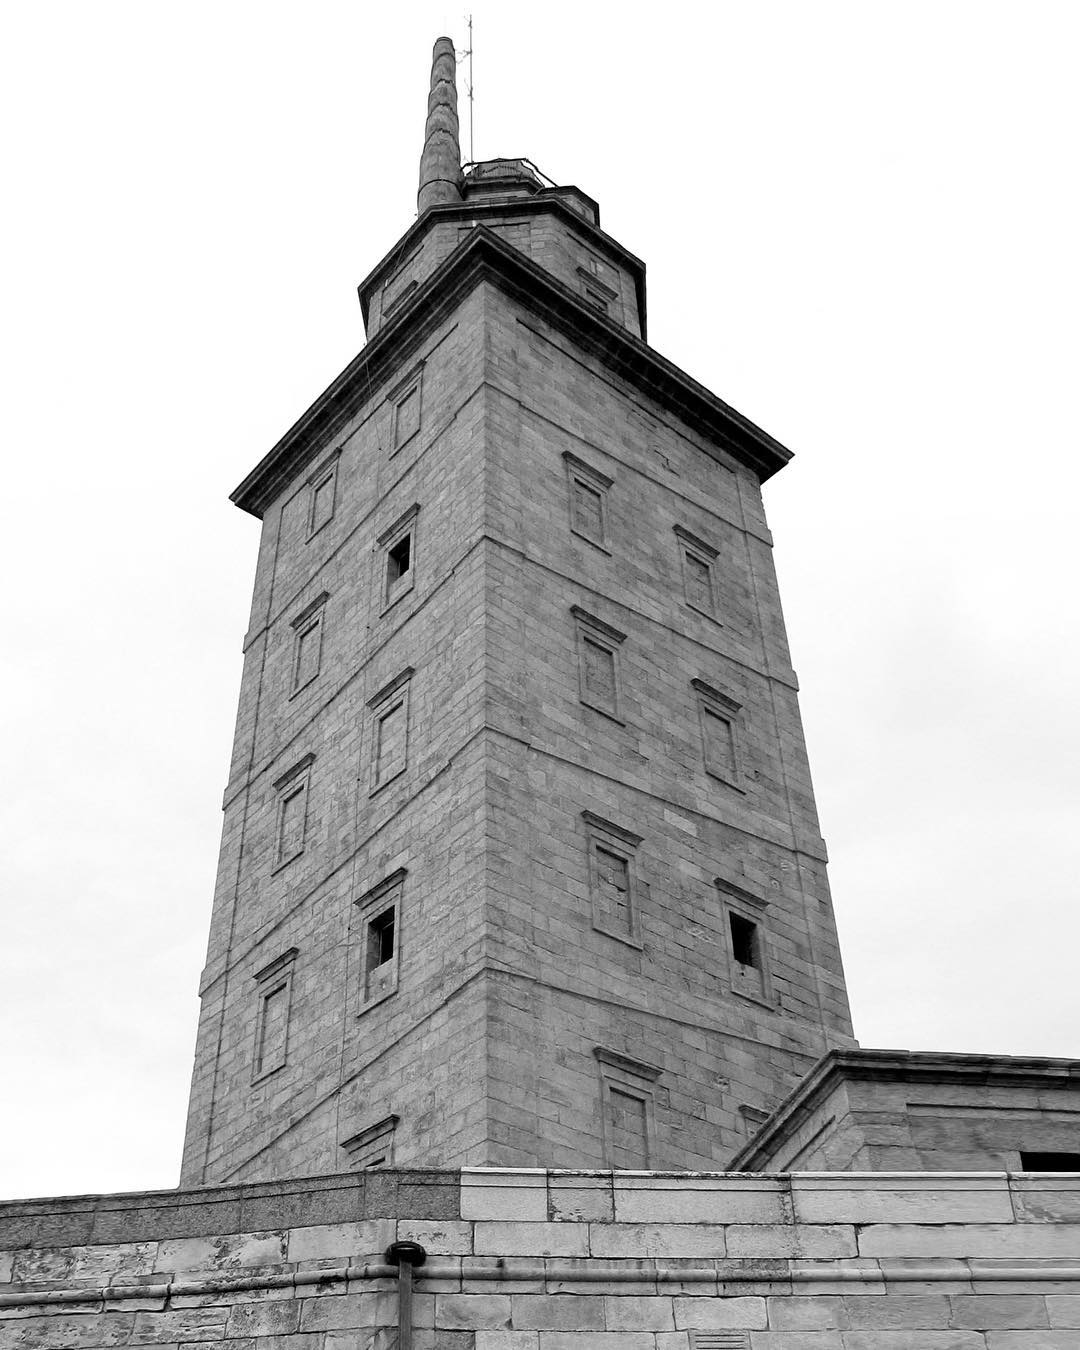 La torre de hércules